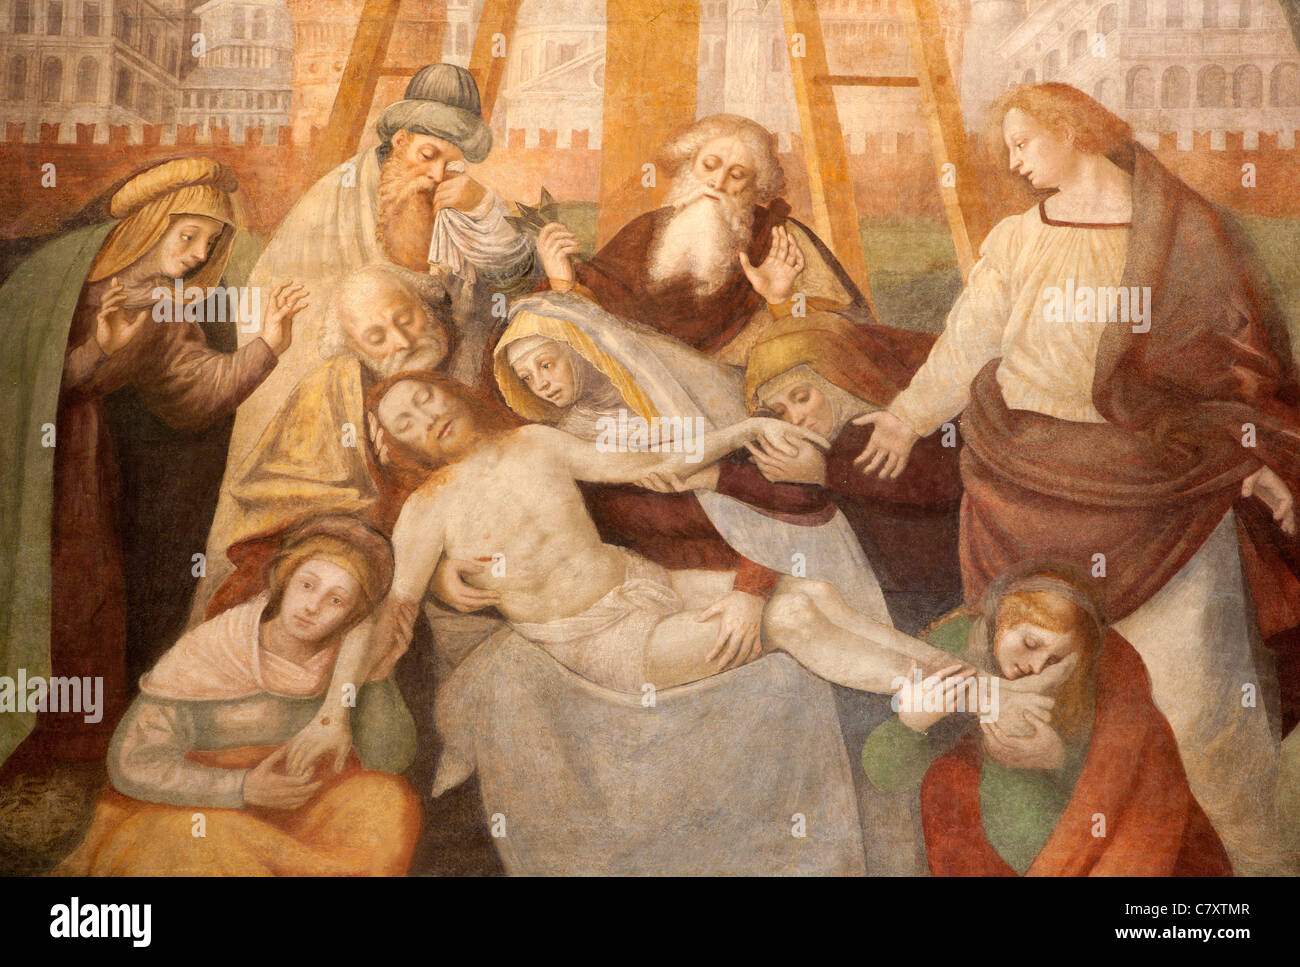 Milan - Deposition of Christ - Giovani Battista della Cerva 1545-1546 - Saint Ambrosius church Stock Photo